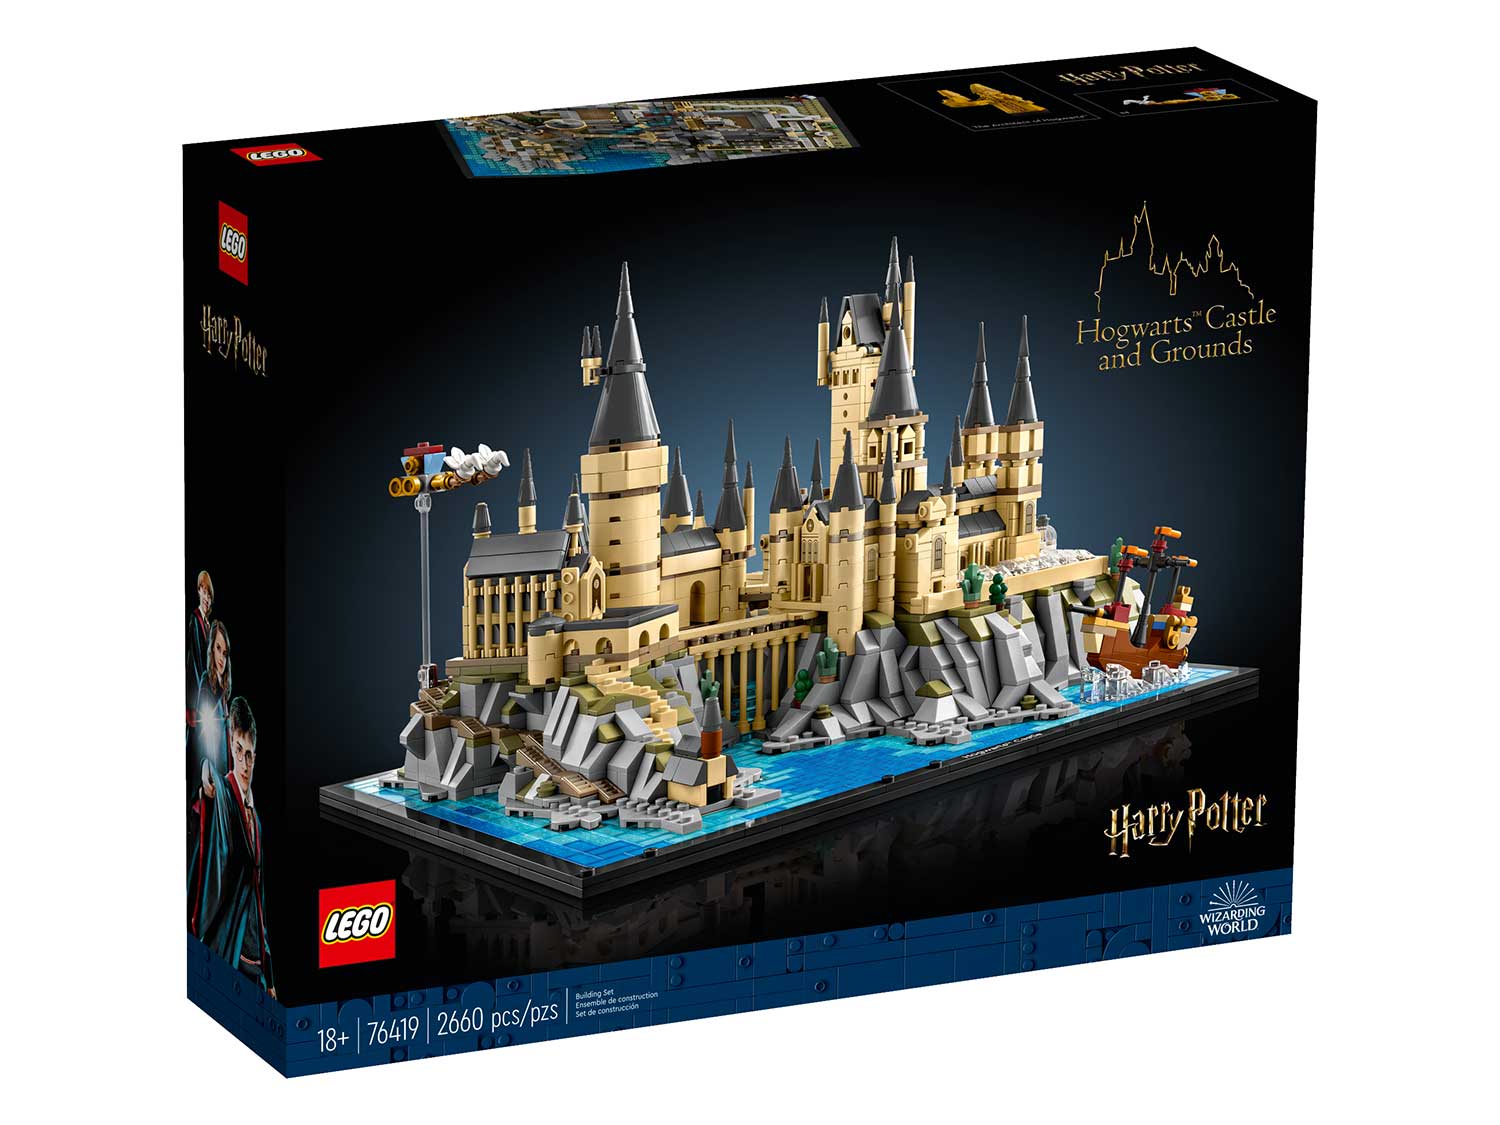 Конструктор Lego Harry Potter Hogwarts Castle and Grounds, 76419 конструктор lego harry potter hogwarts castle and grounds 76419